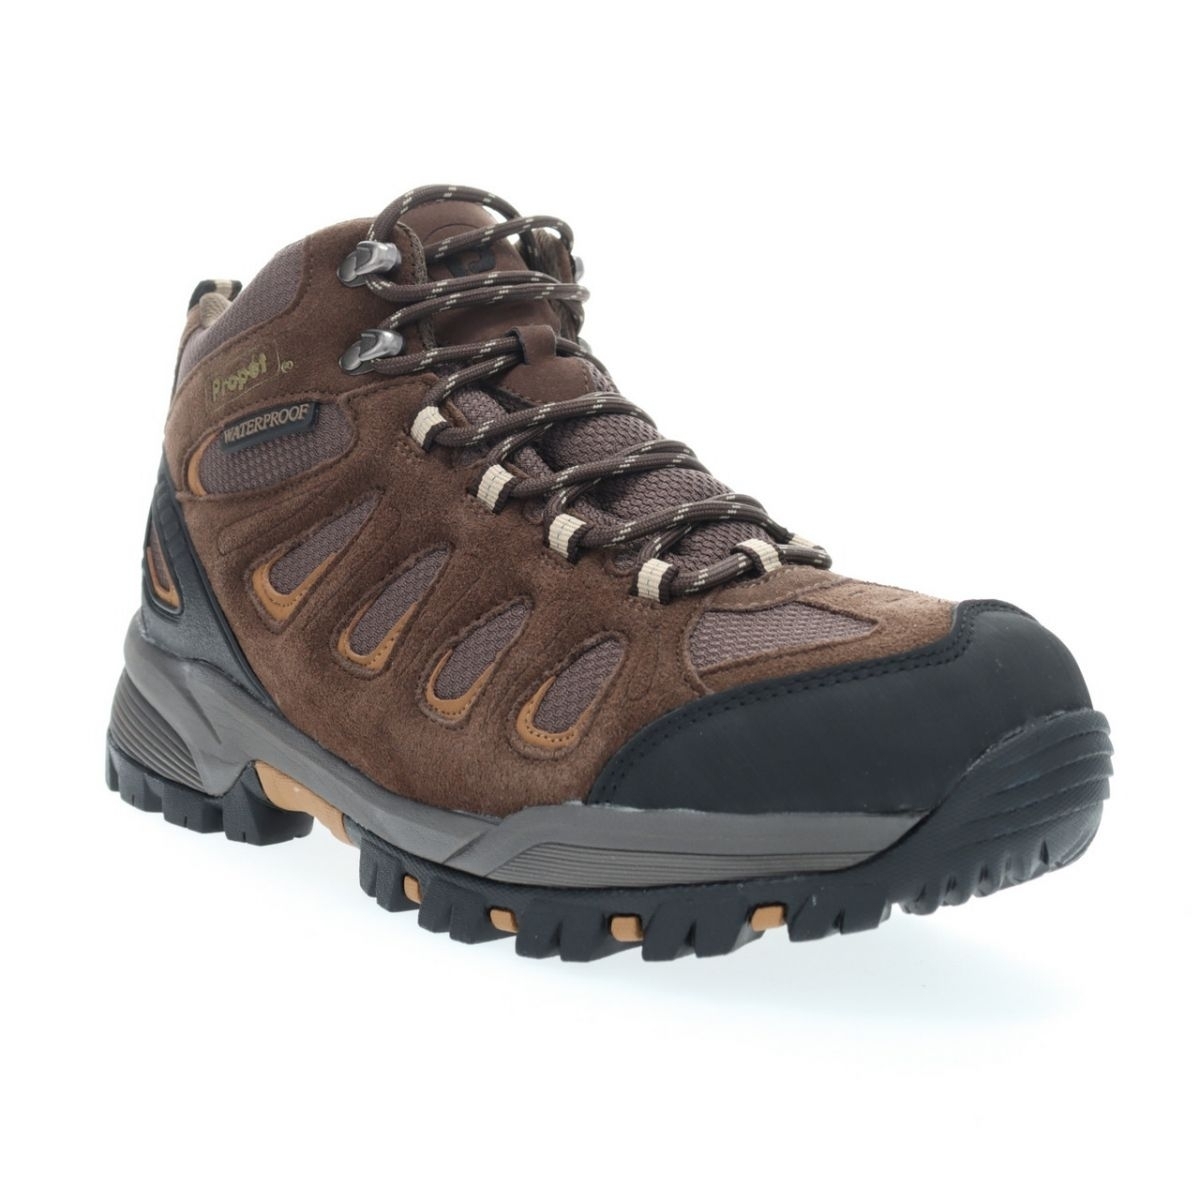 Propet Men's Ridge Walker Hiking Boot Brown - M3599BR 8 XX US Men BROWN - BROWN, 11 WIDE